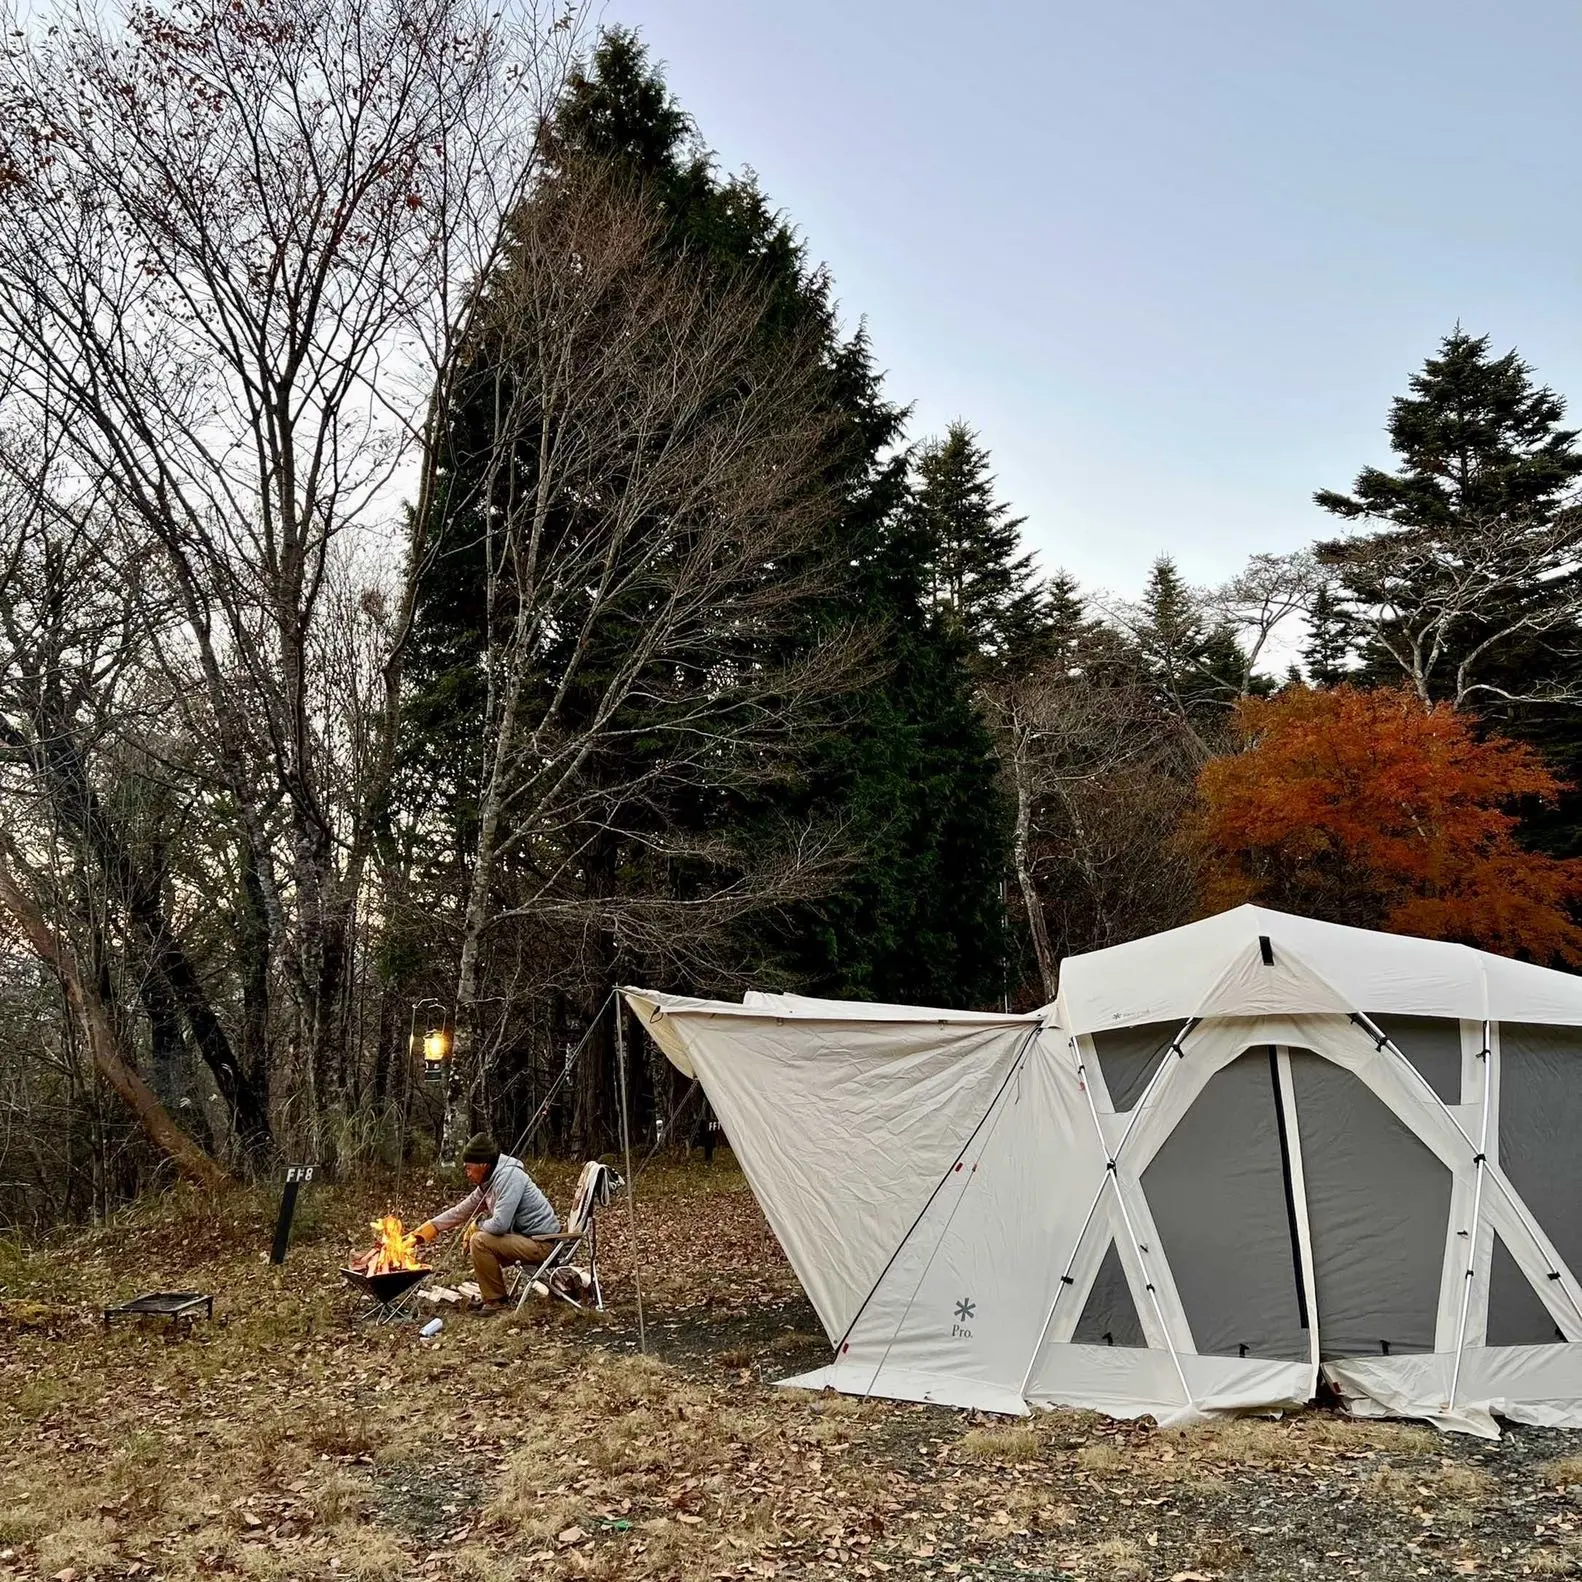 キャンプ場「PICA表富士」でのキャンプ、アイボリーのテント